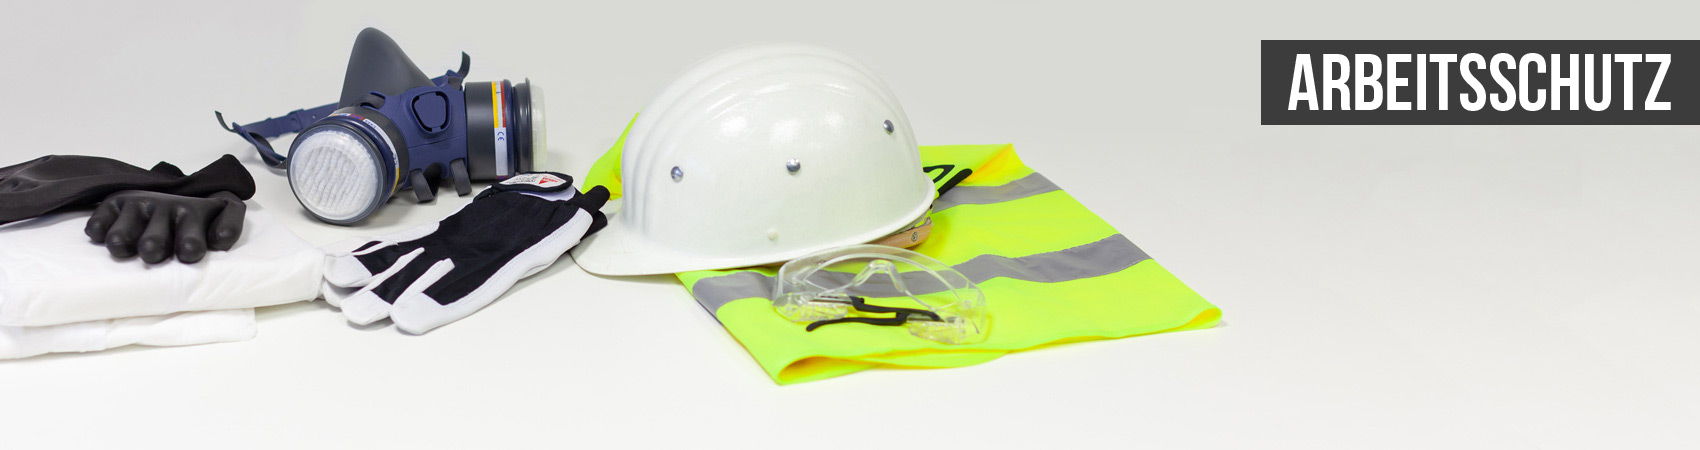 Chemikalienschutzanzug, Montagehandschuhe, Vollmaske, Schutzhandschuhe, Helm, Sicherheitsweste, Schutzbrille